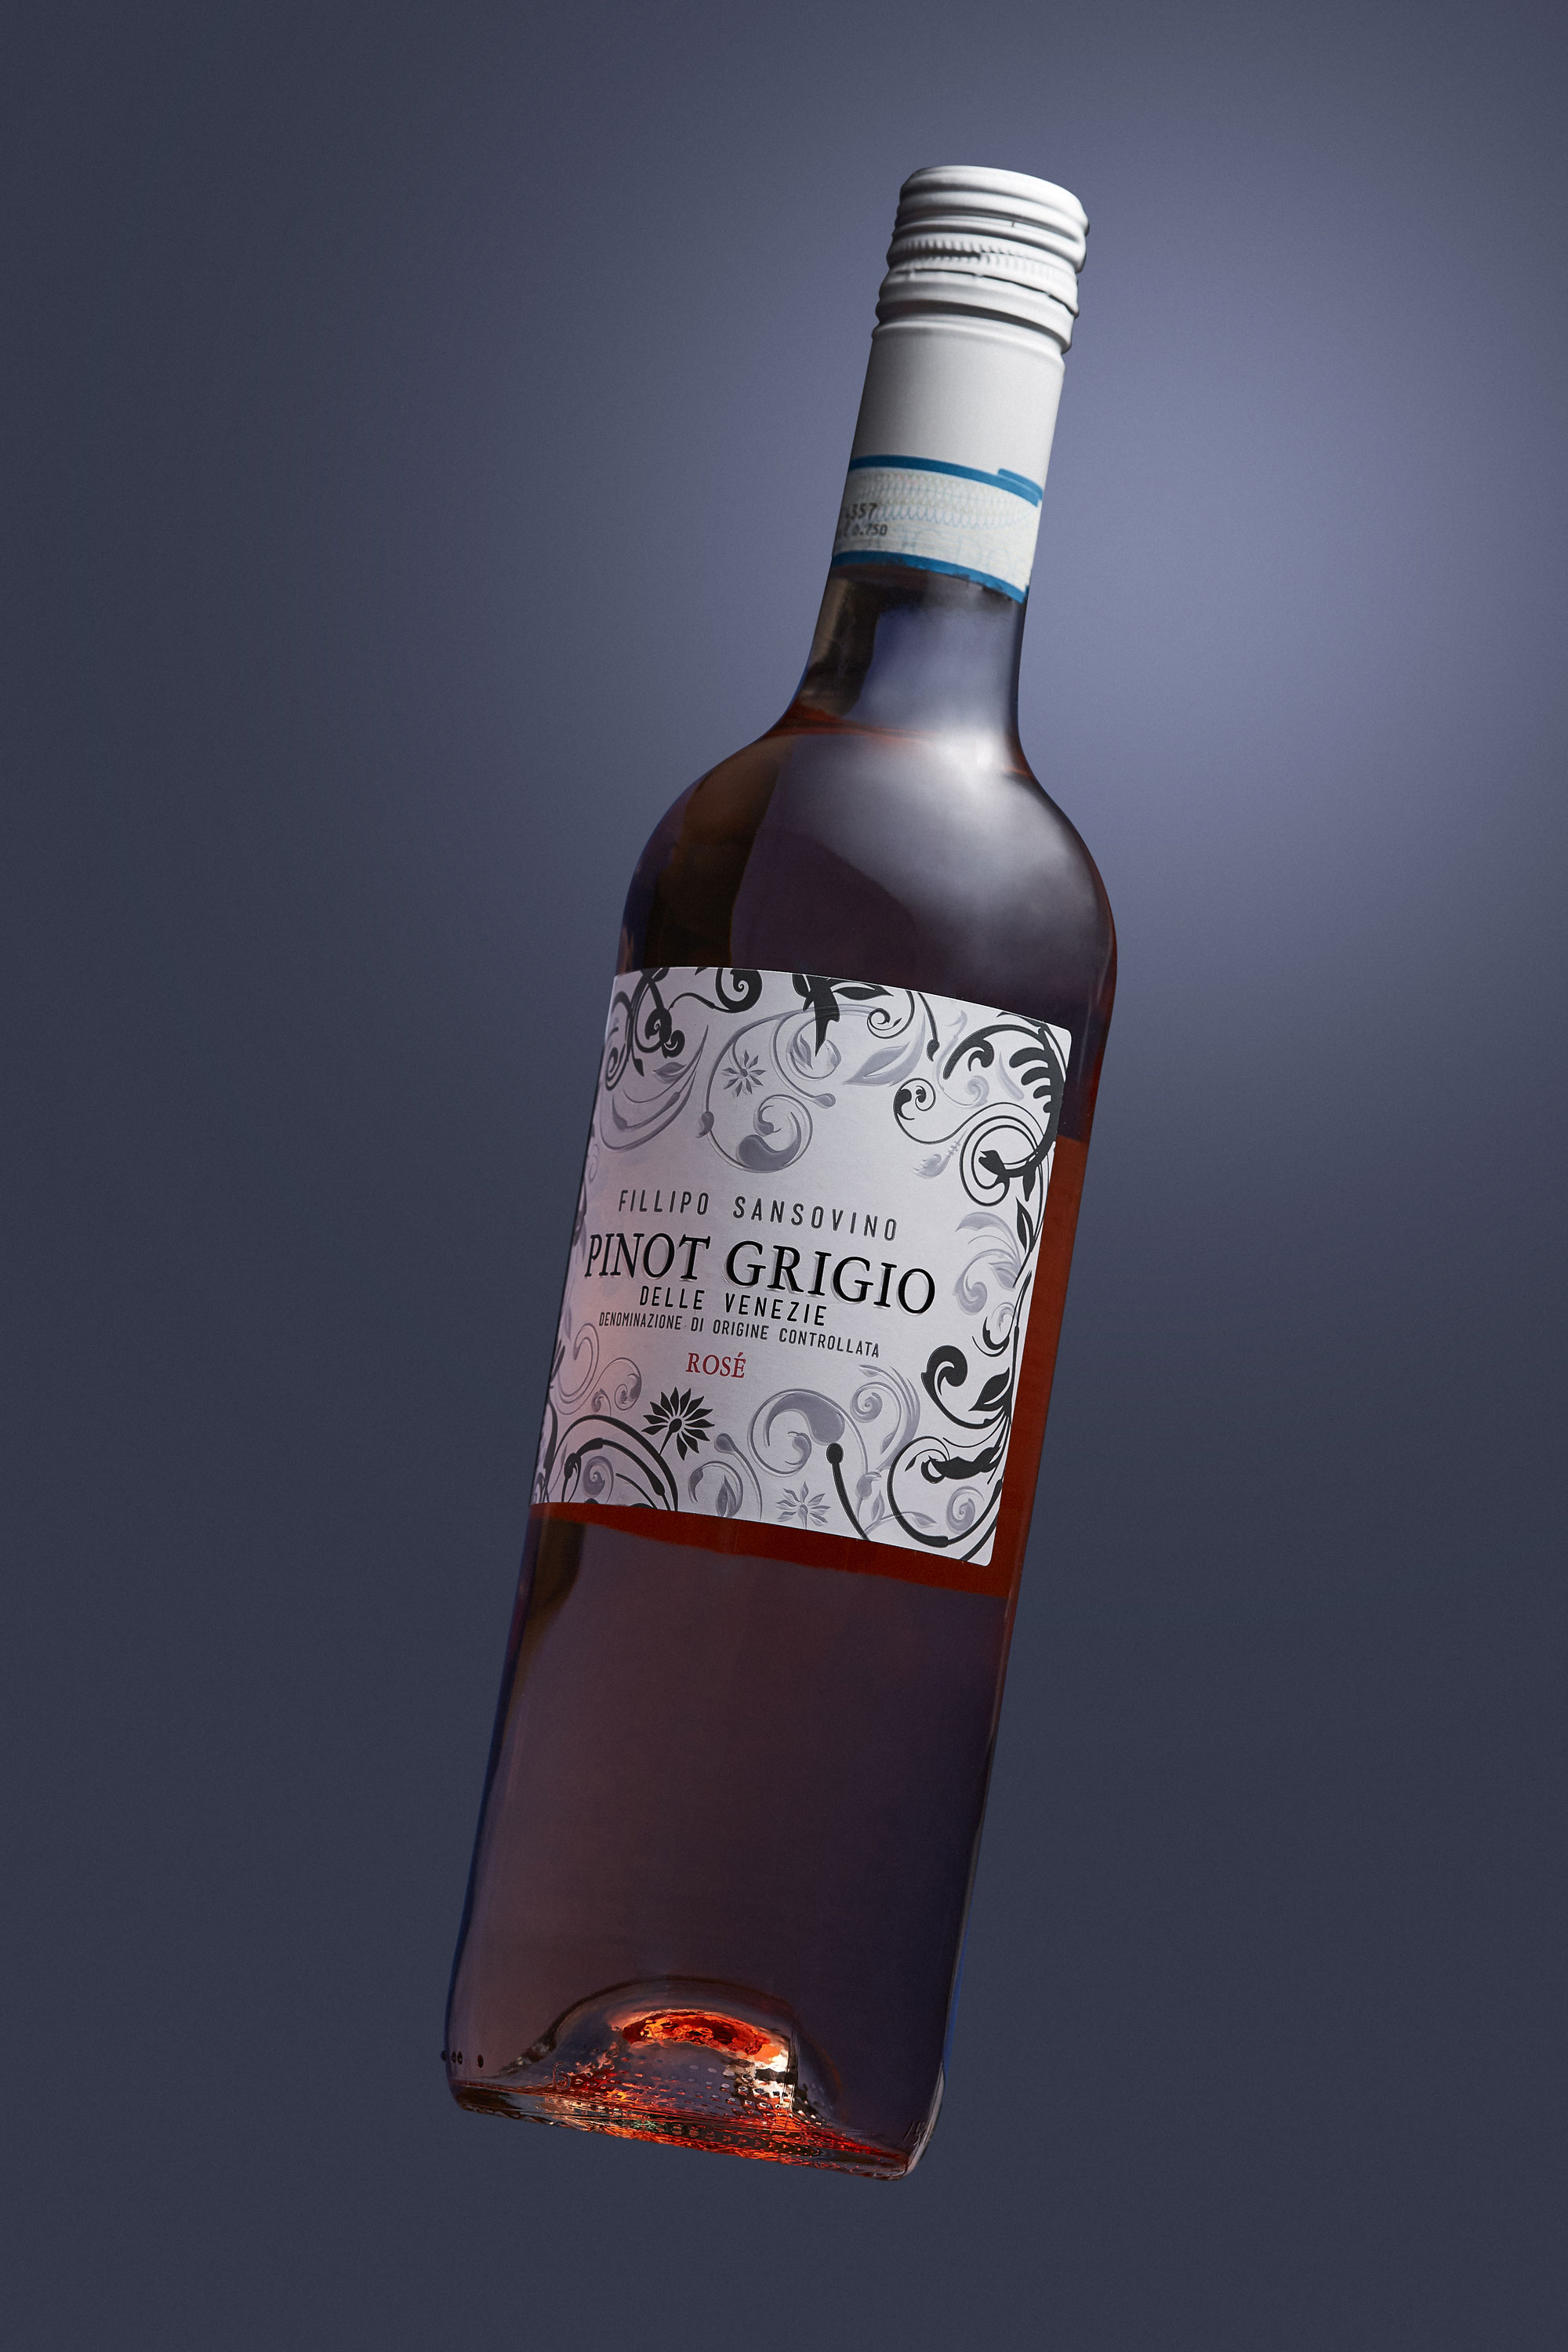 pinot grigio rose label in close up